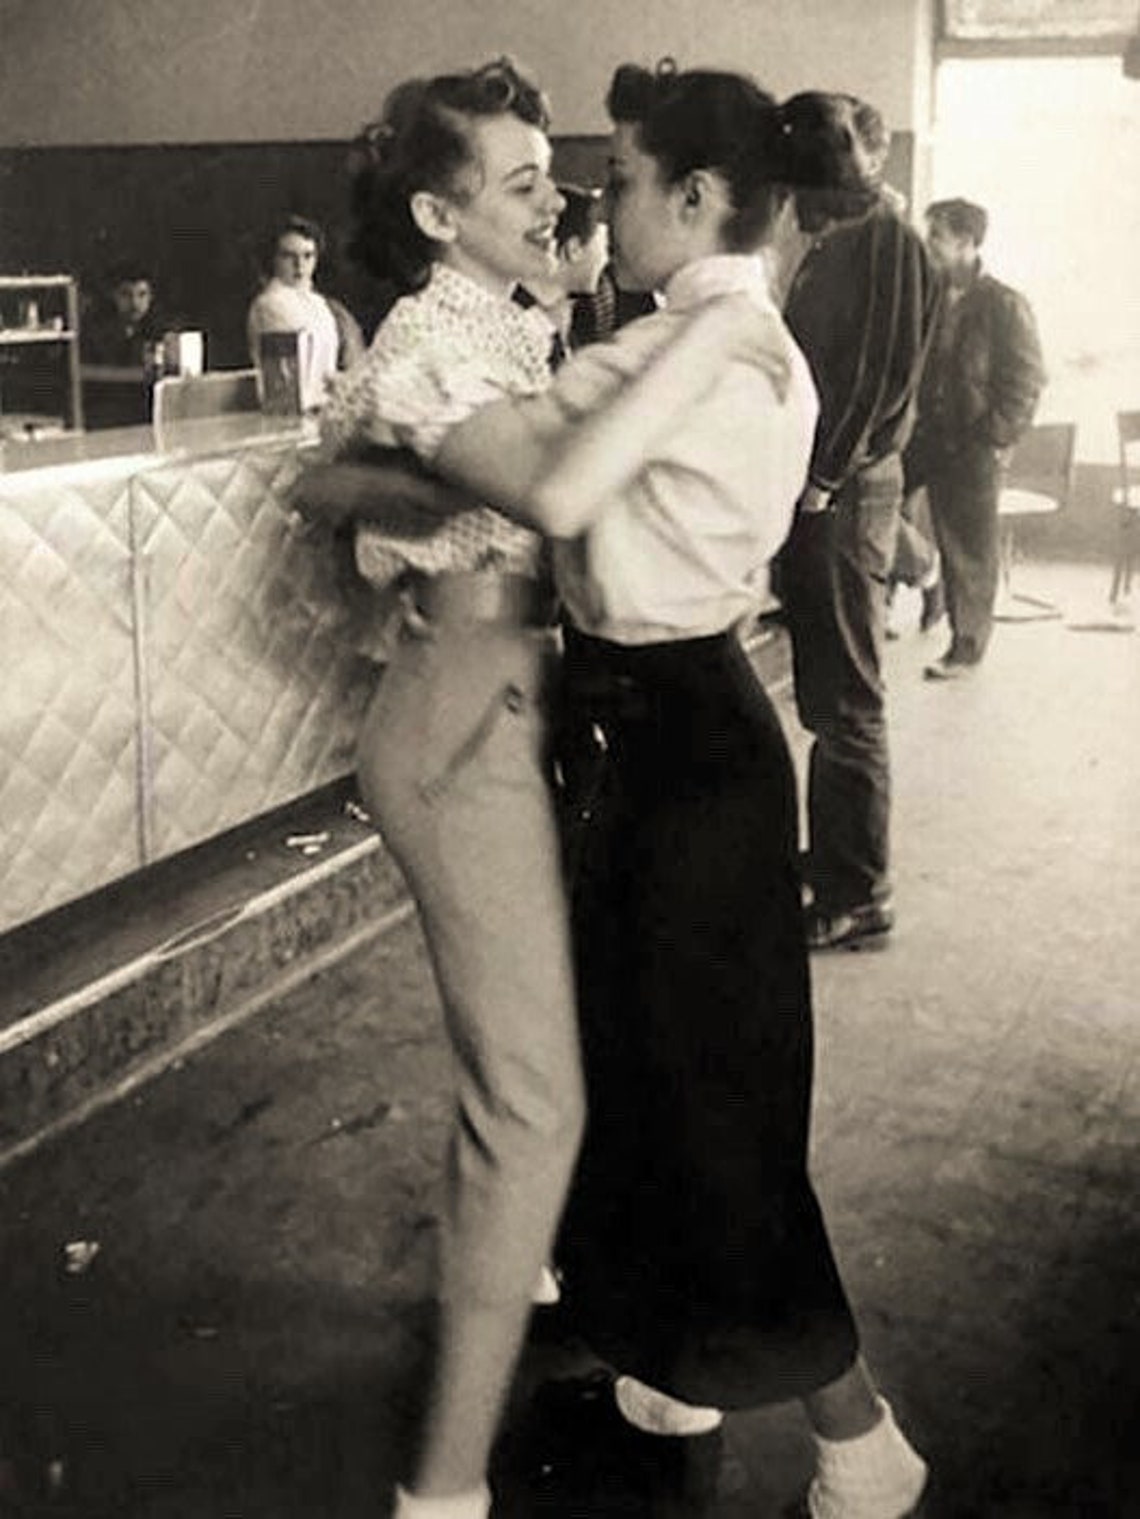 Lesbians Dancing 1950s Public Affection Butch Femme Etsy pic